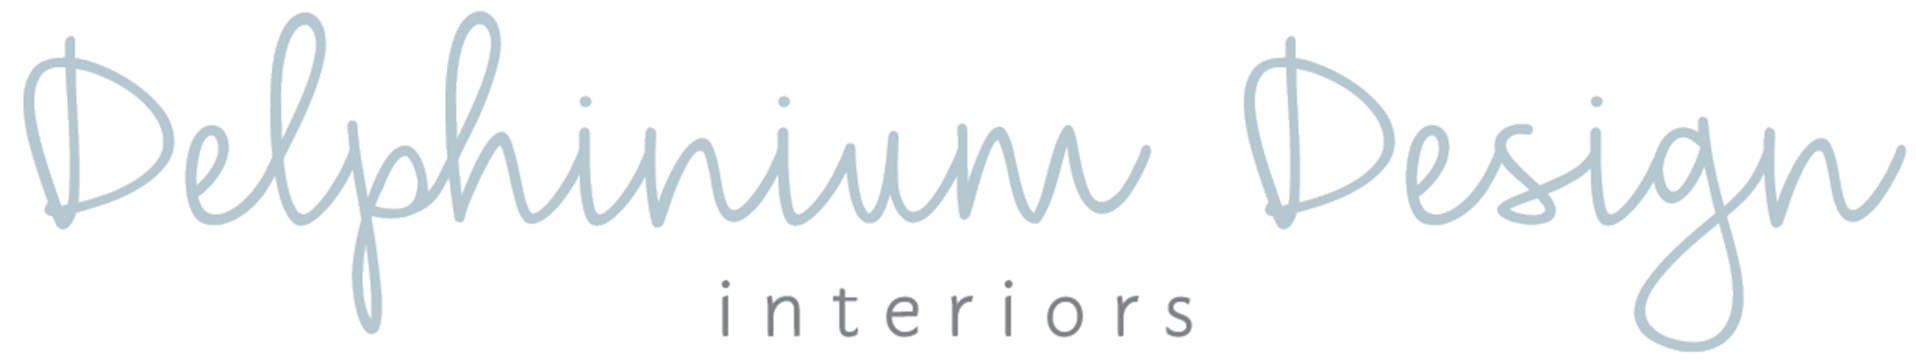 Delphinium Design Interiors logo